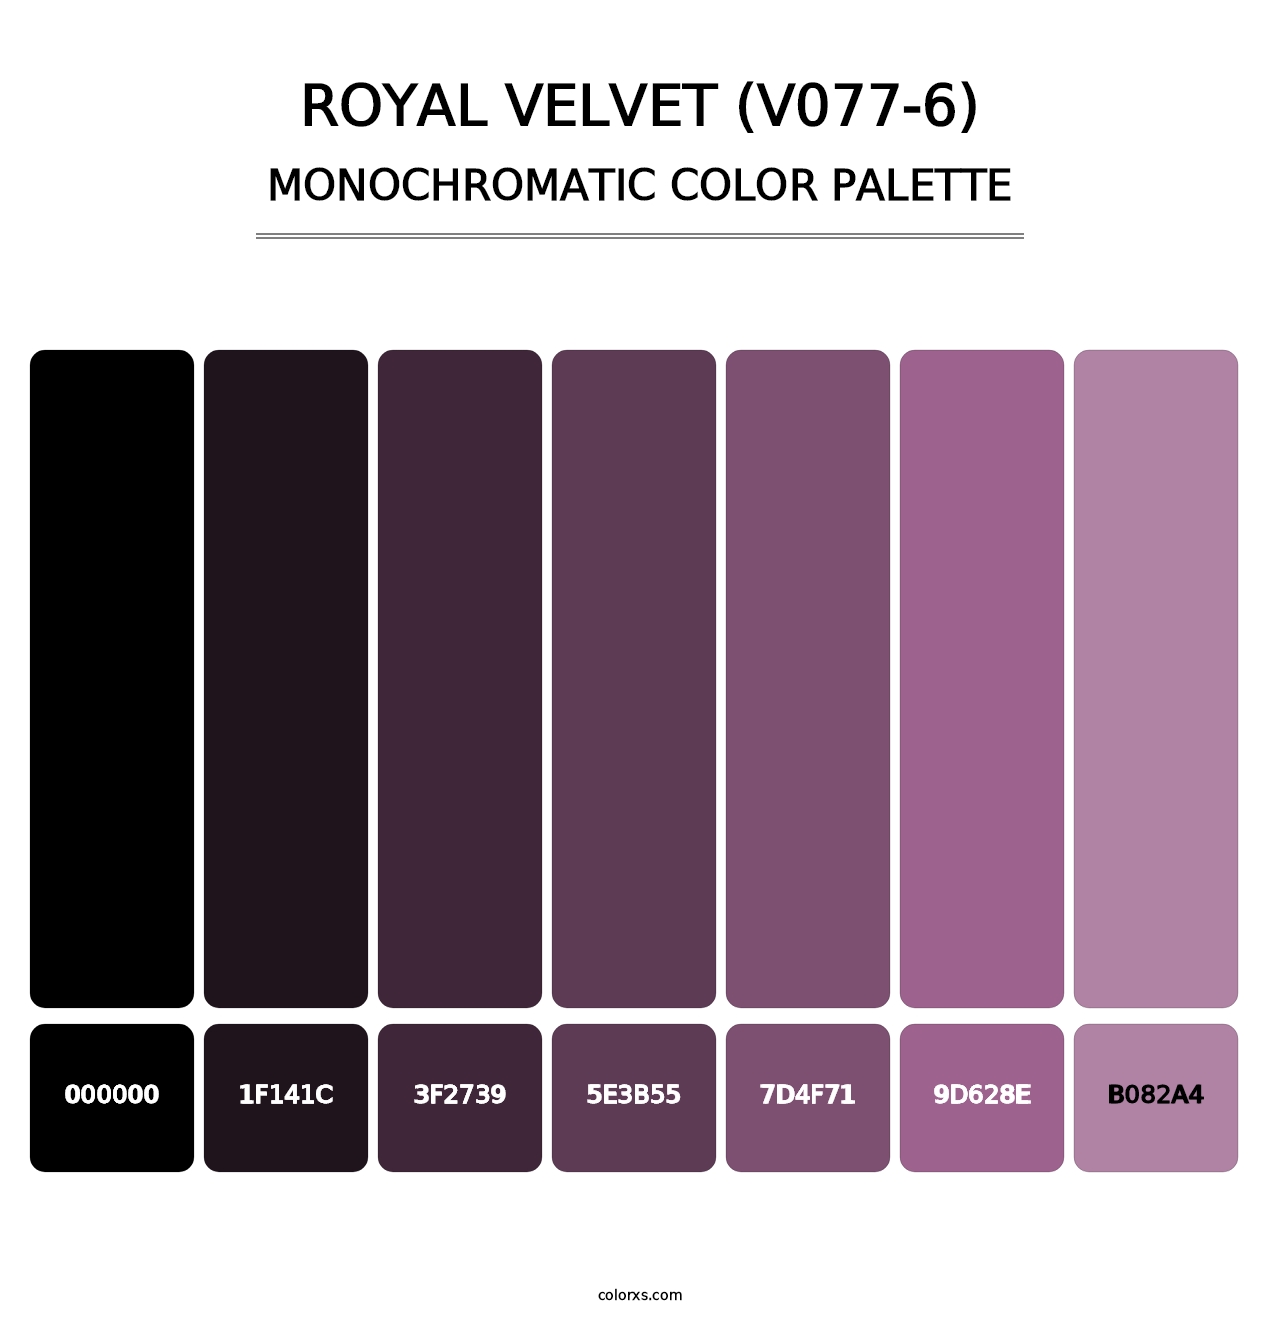 Royal Velvet (V077-6) - Monochromatic Color Palette